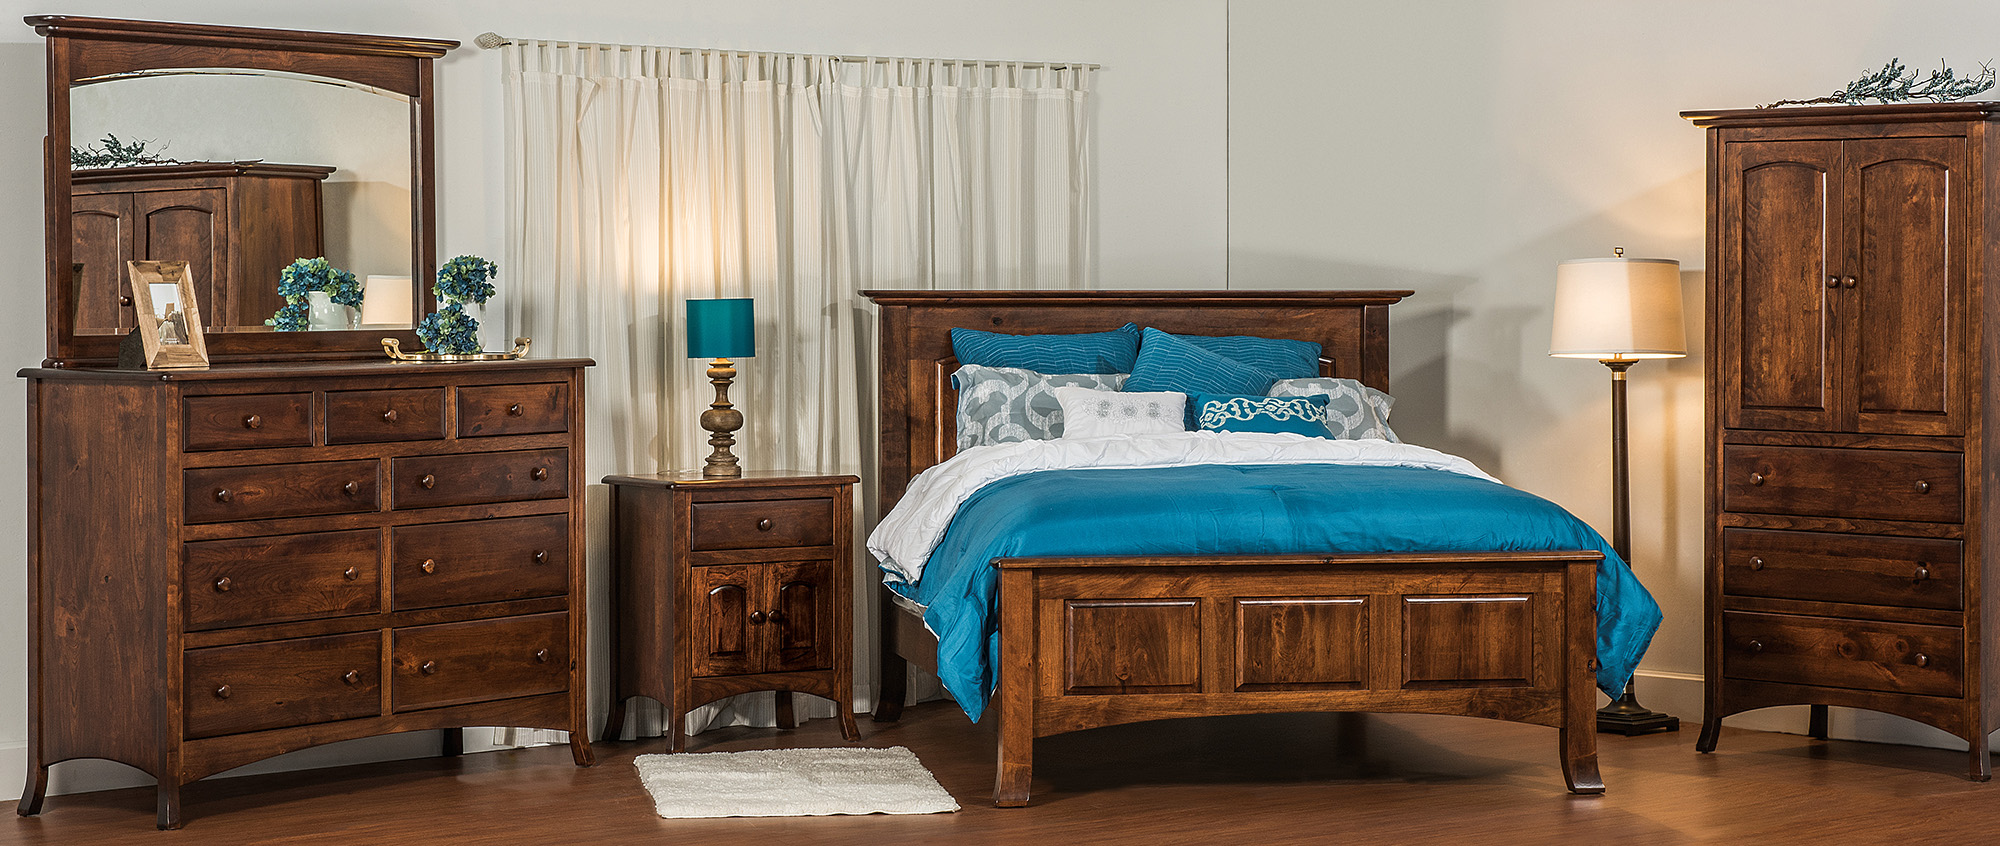 bedroom furniture for sale carlisle